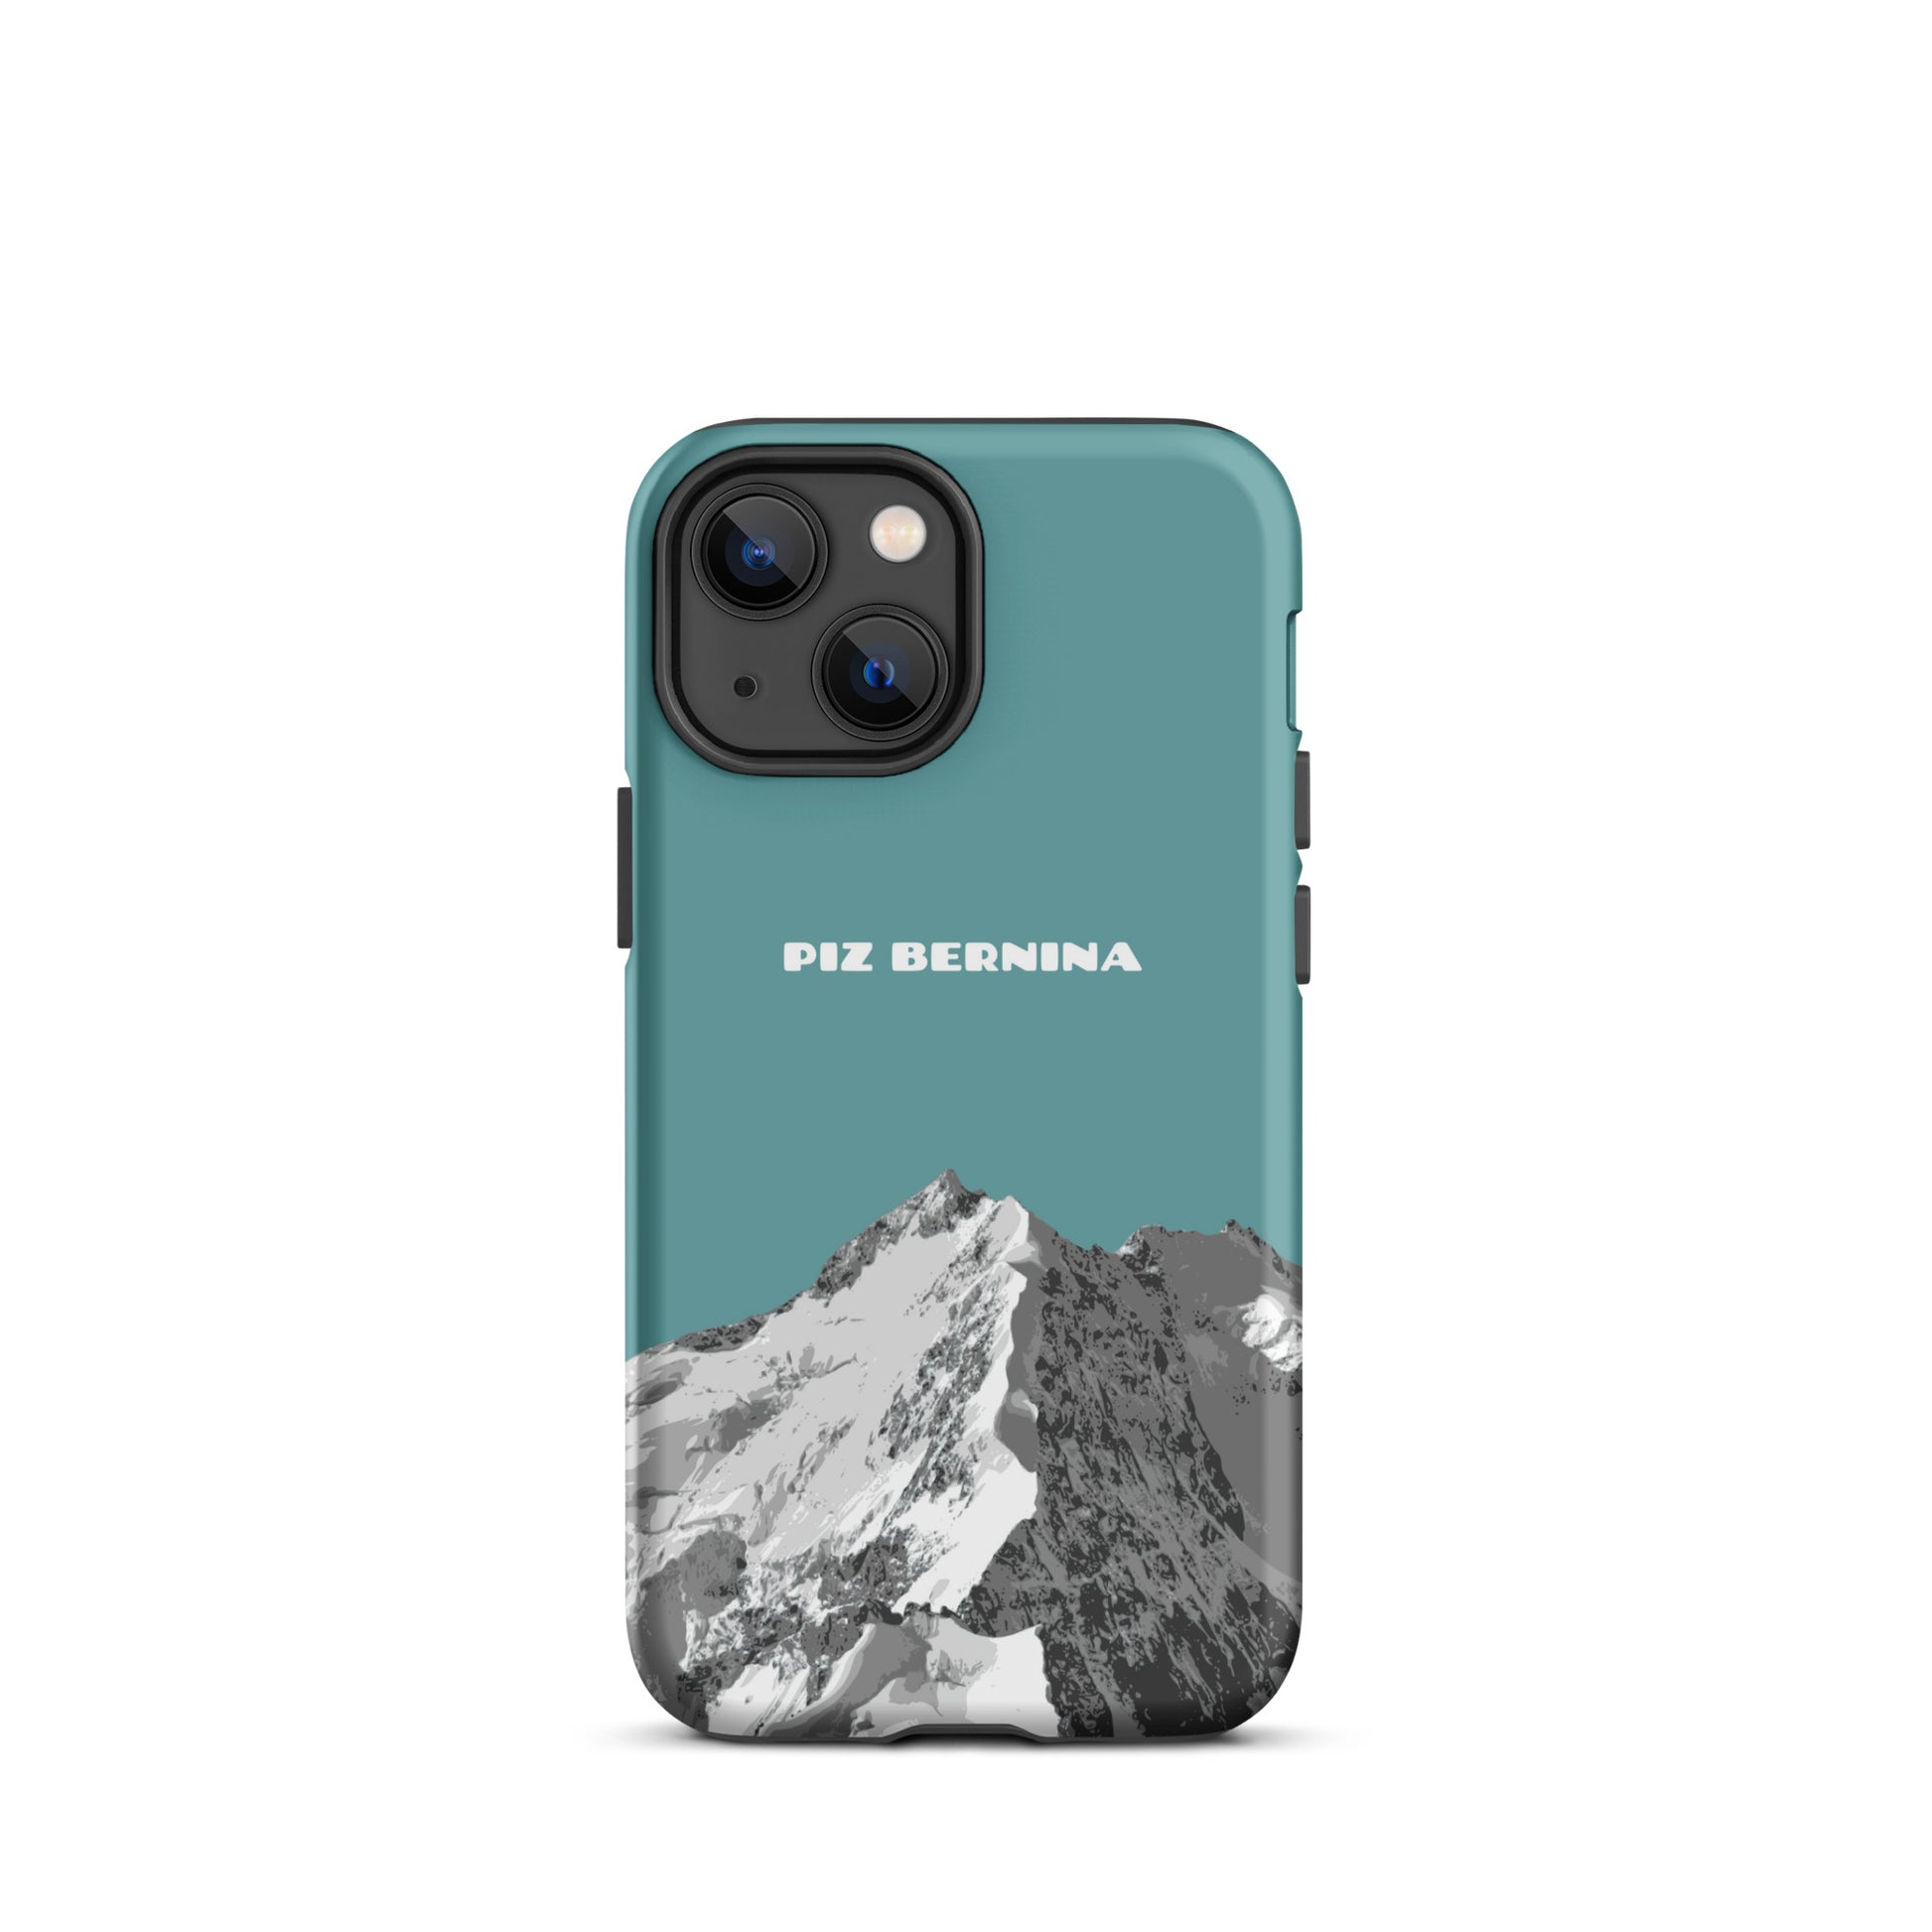 Hülle für das iPhone 13 Mini von Apple in der Farbe Kadettenblau, dass den Piz Bernina in Graubünden zeigt.